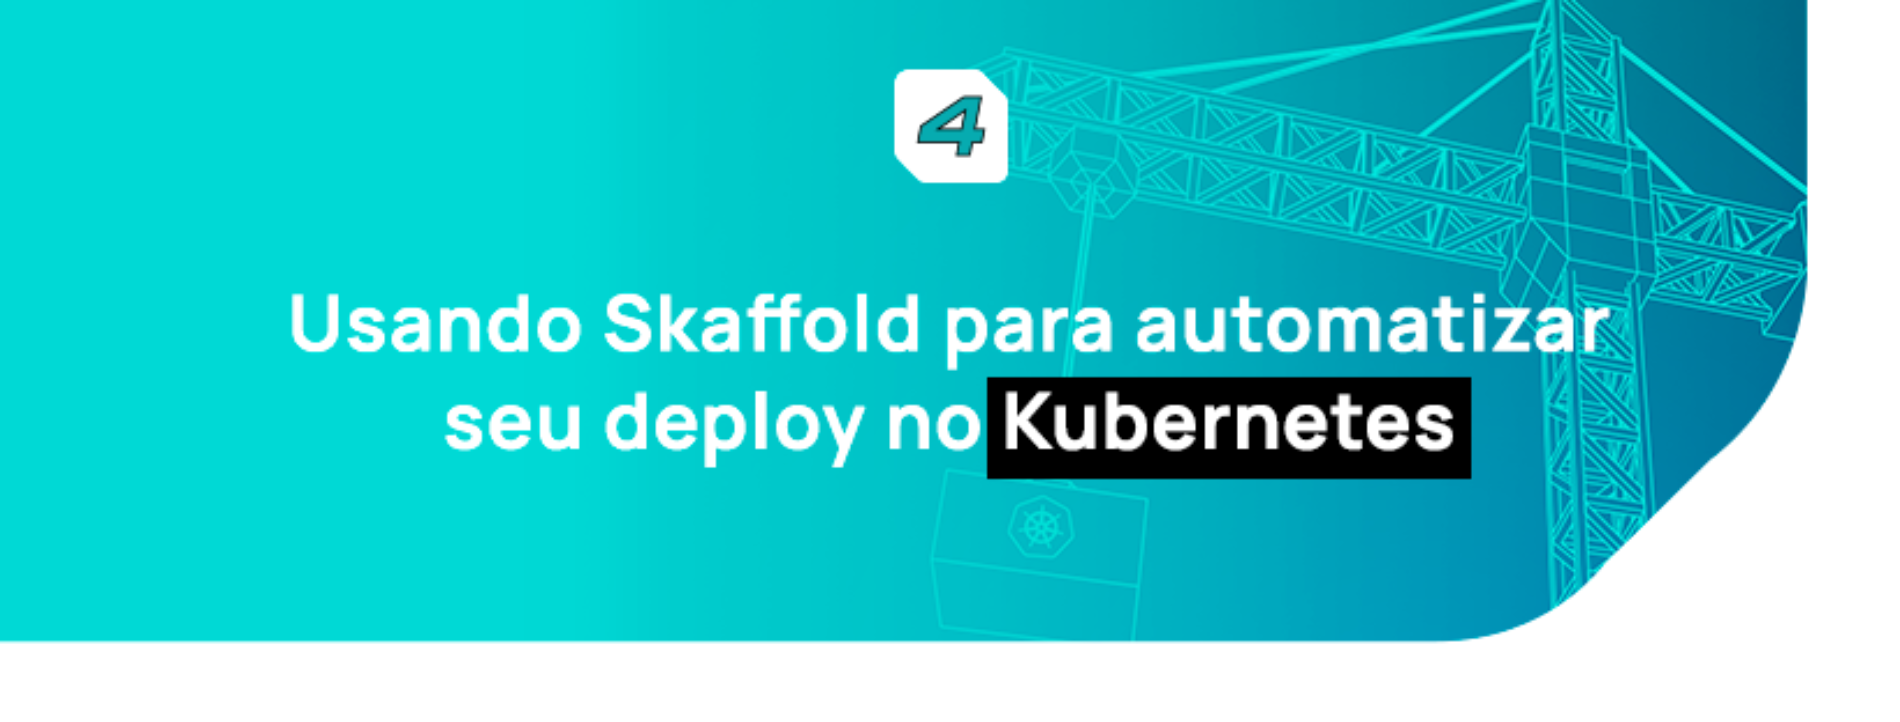 Usando Skaffold para automatizar seu deploy no Kubernetes